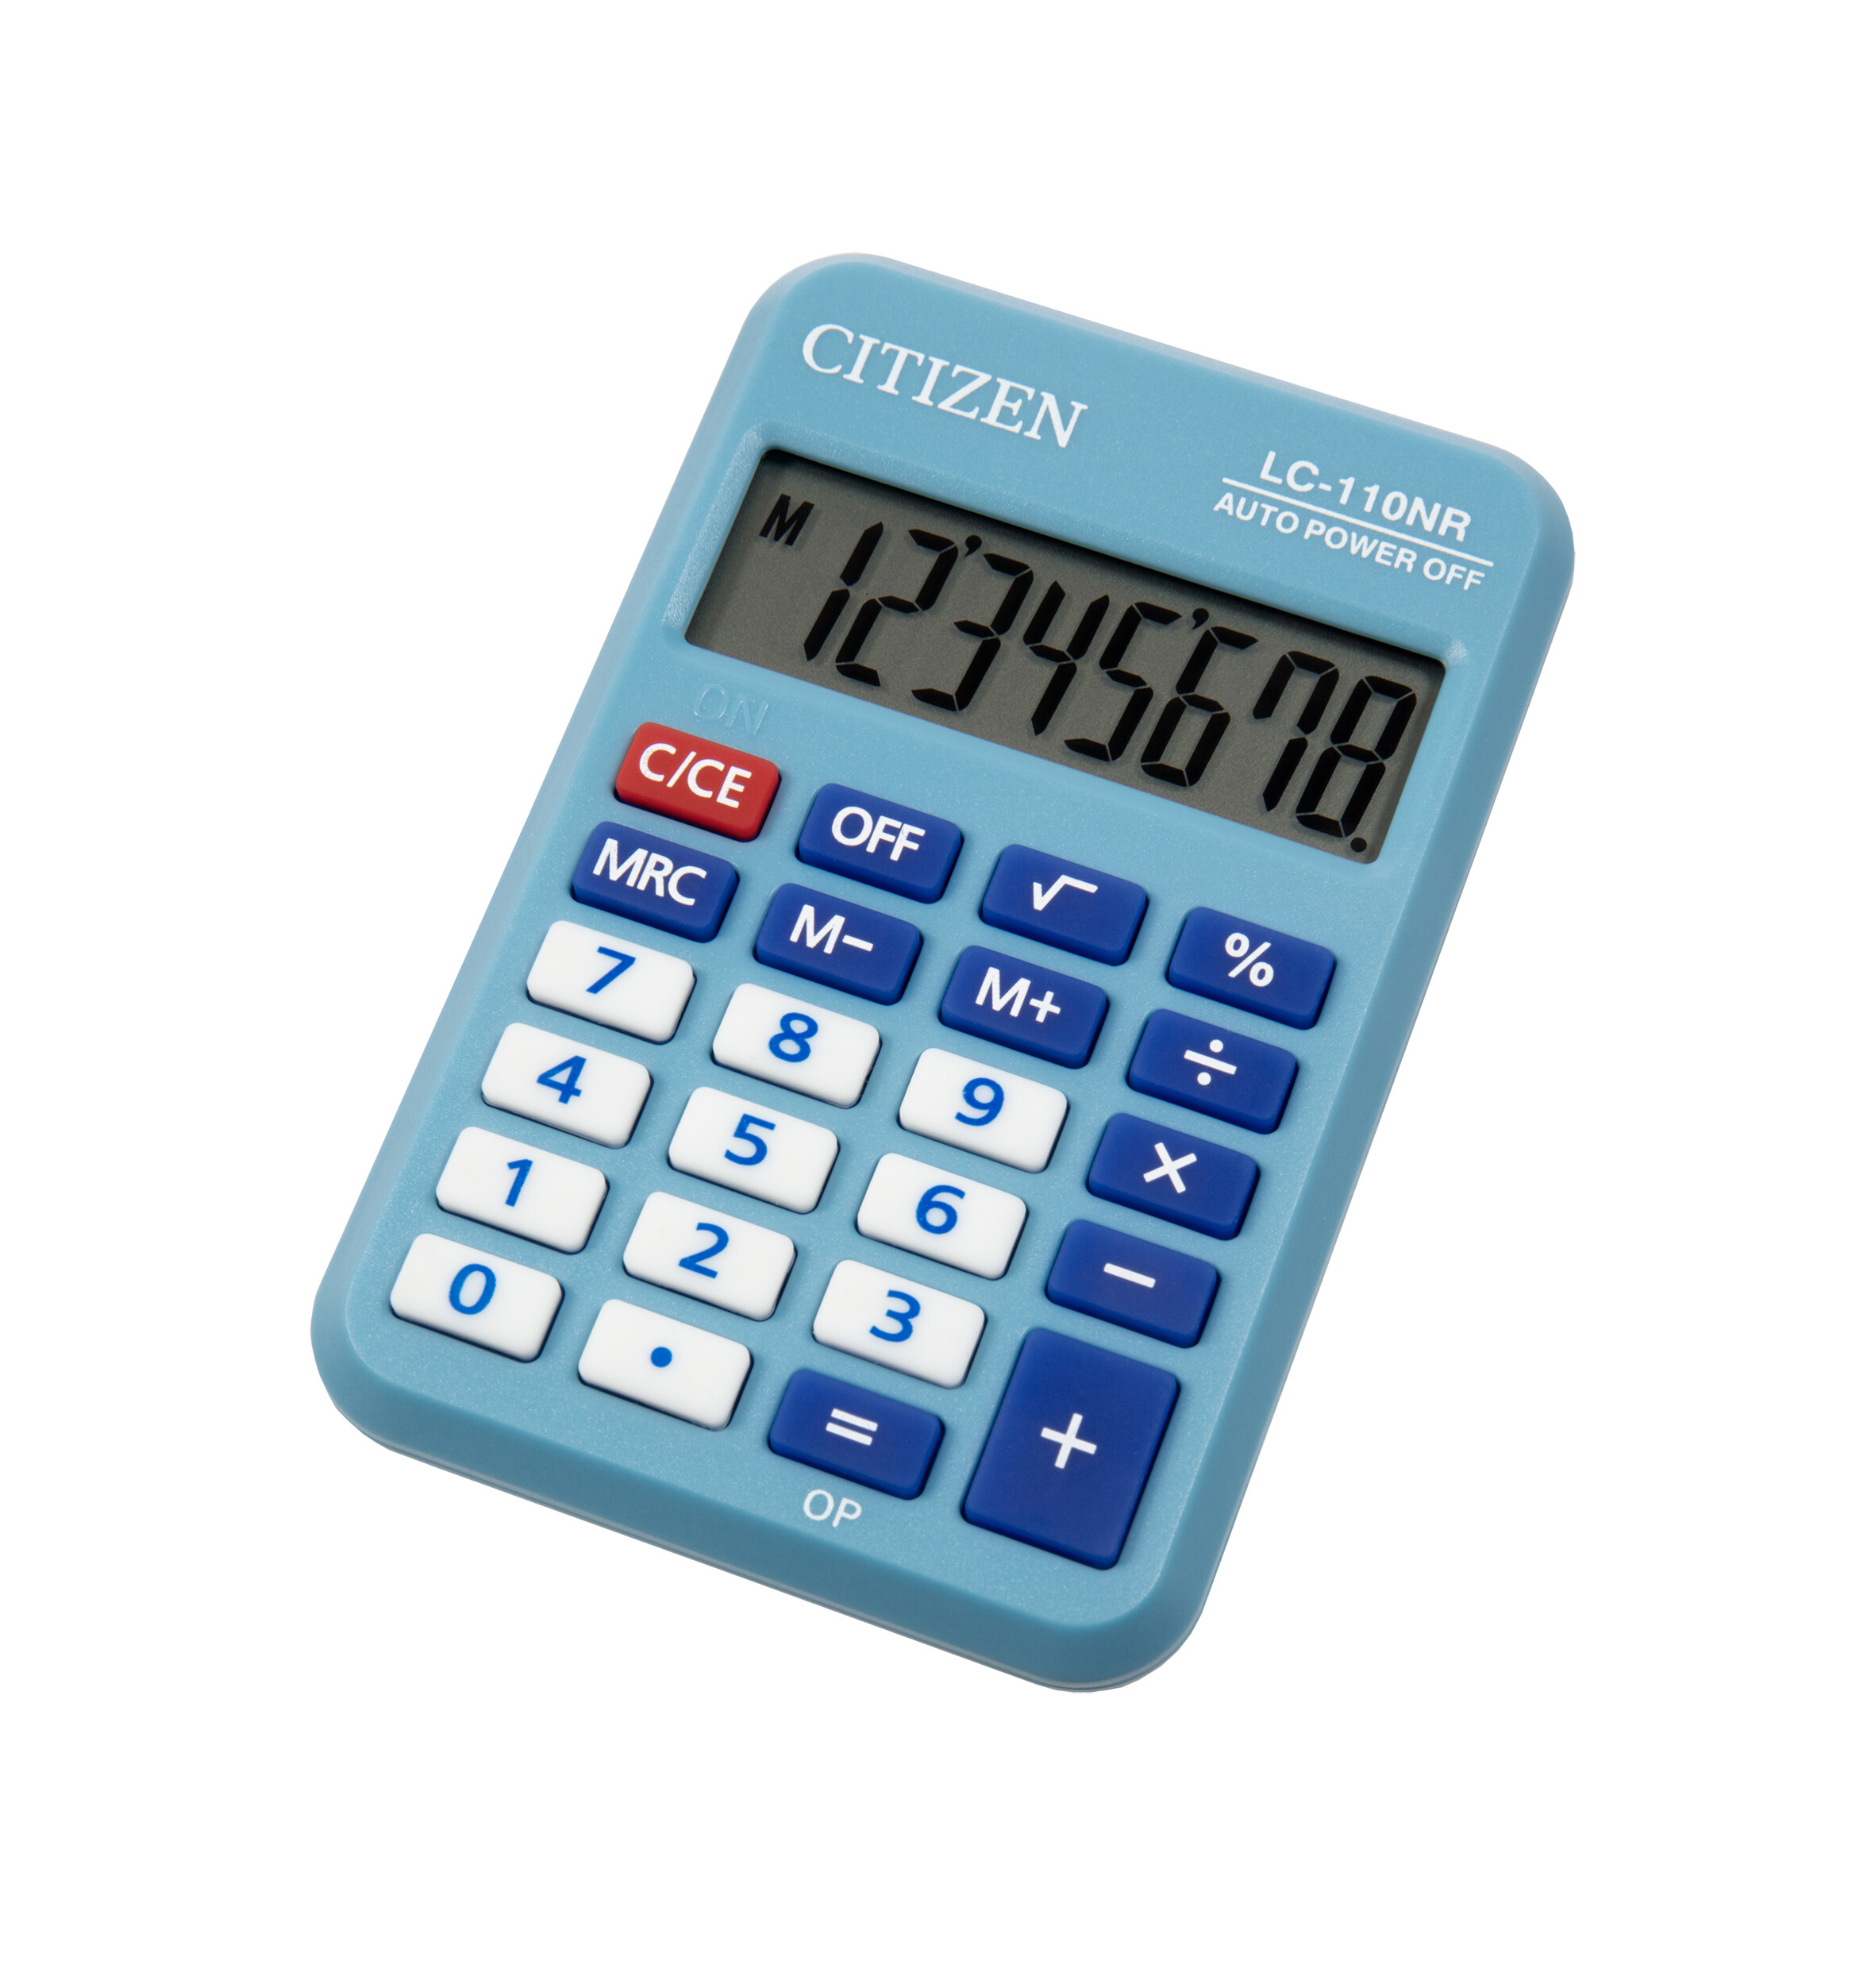 Калькулятор карманный Citizen BusinessLine LC-110NRBL, 8-разрядный, однострочный экран, голубой